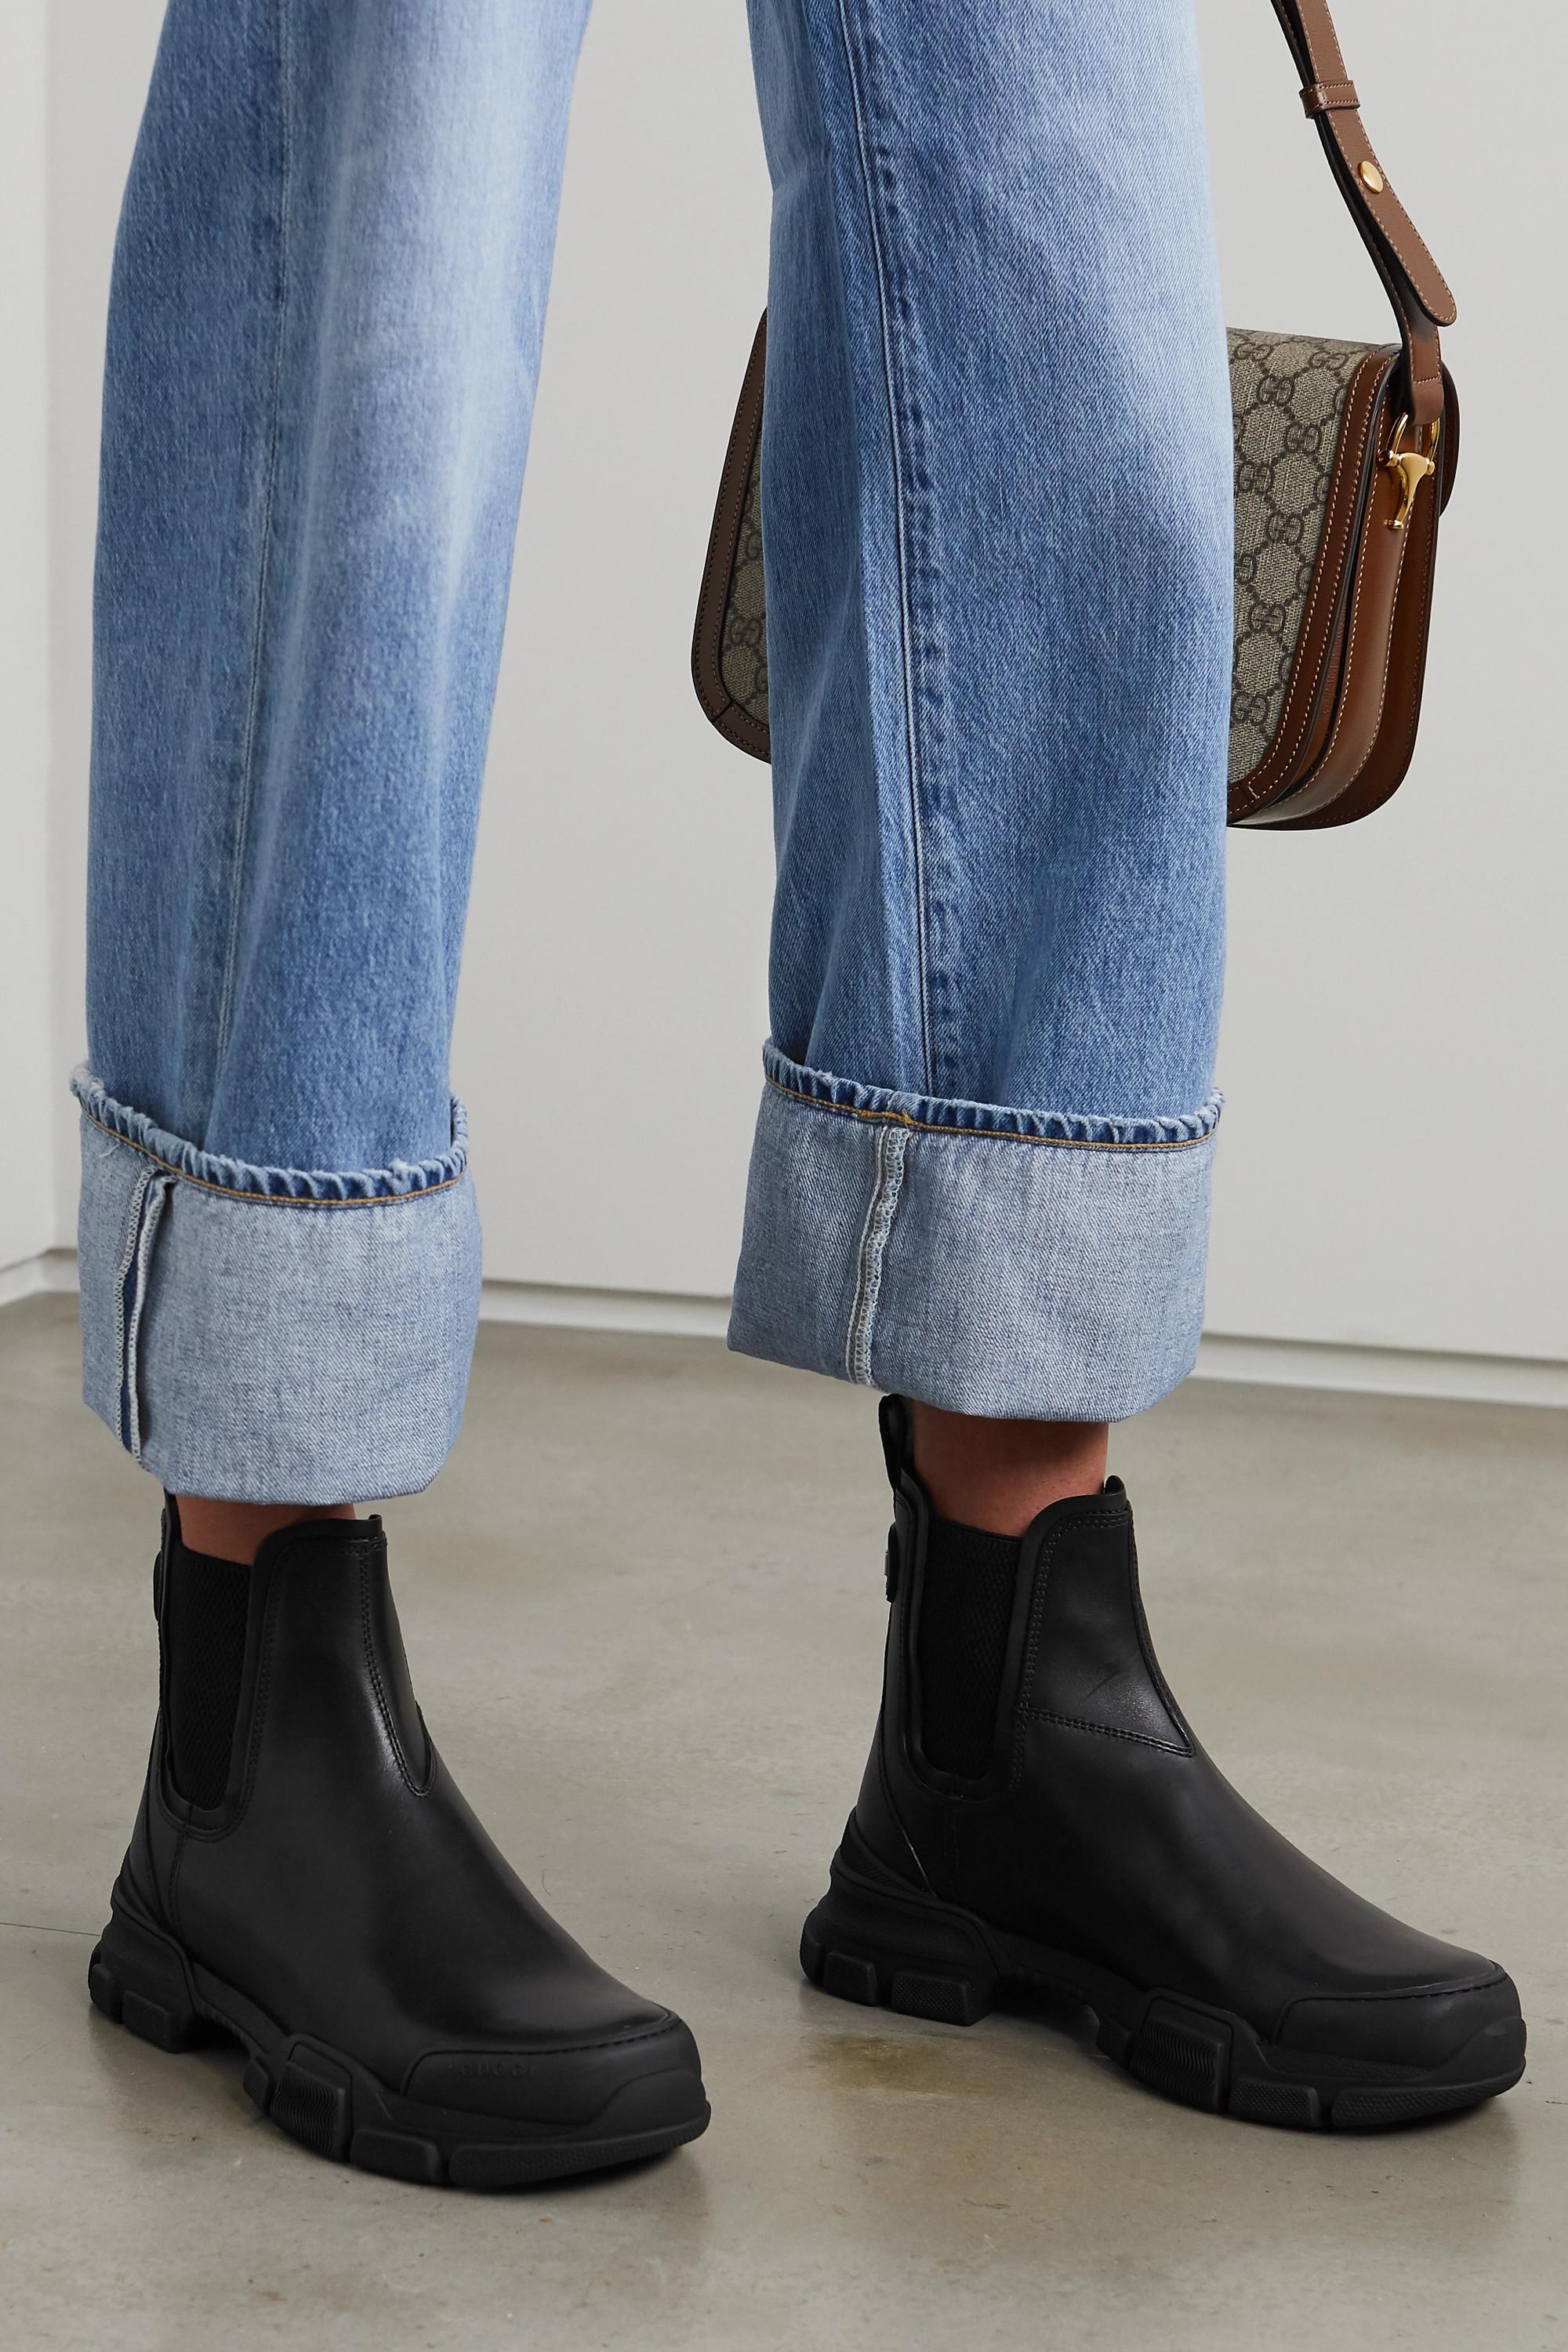 Gucci Leon Chelsea Boots in Black | Lyst Australia